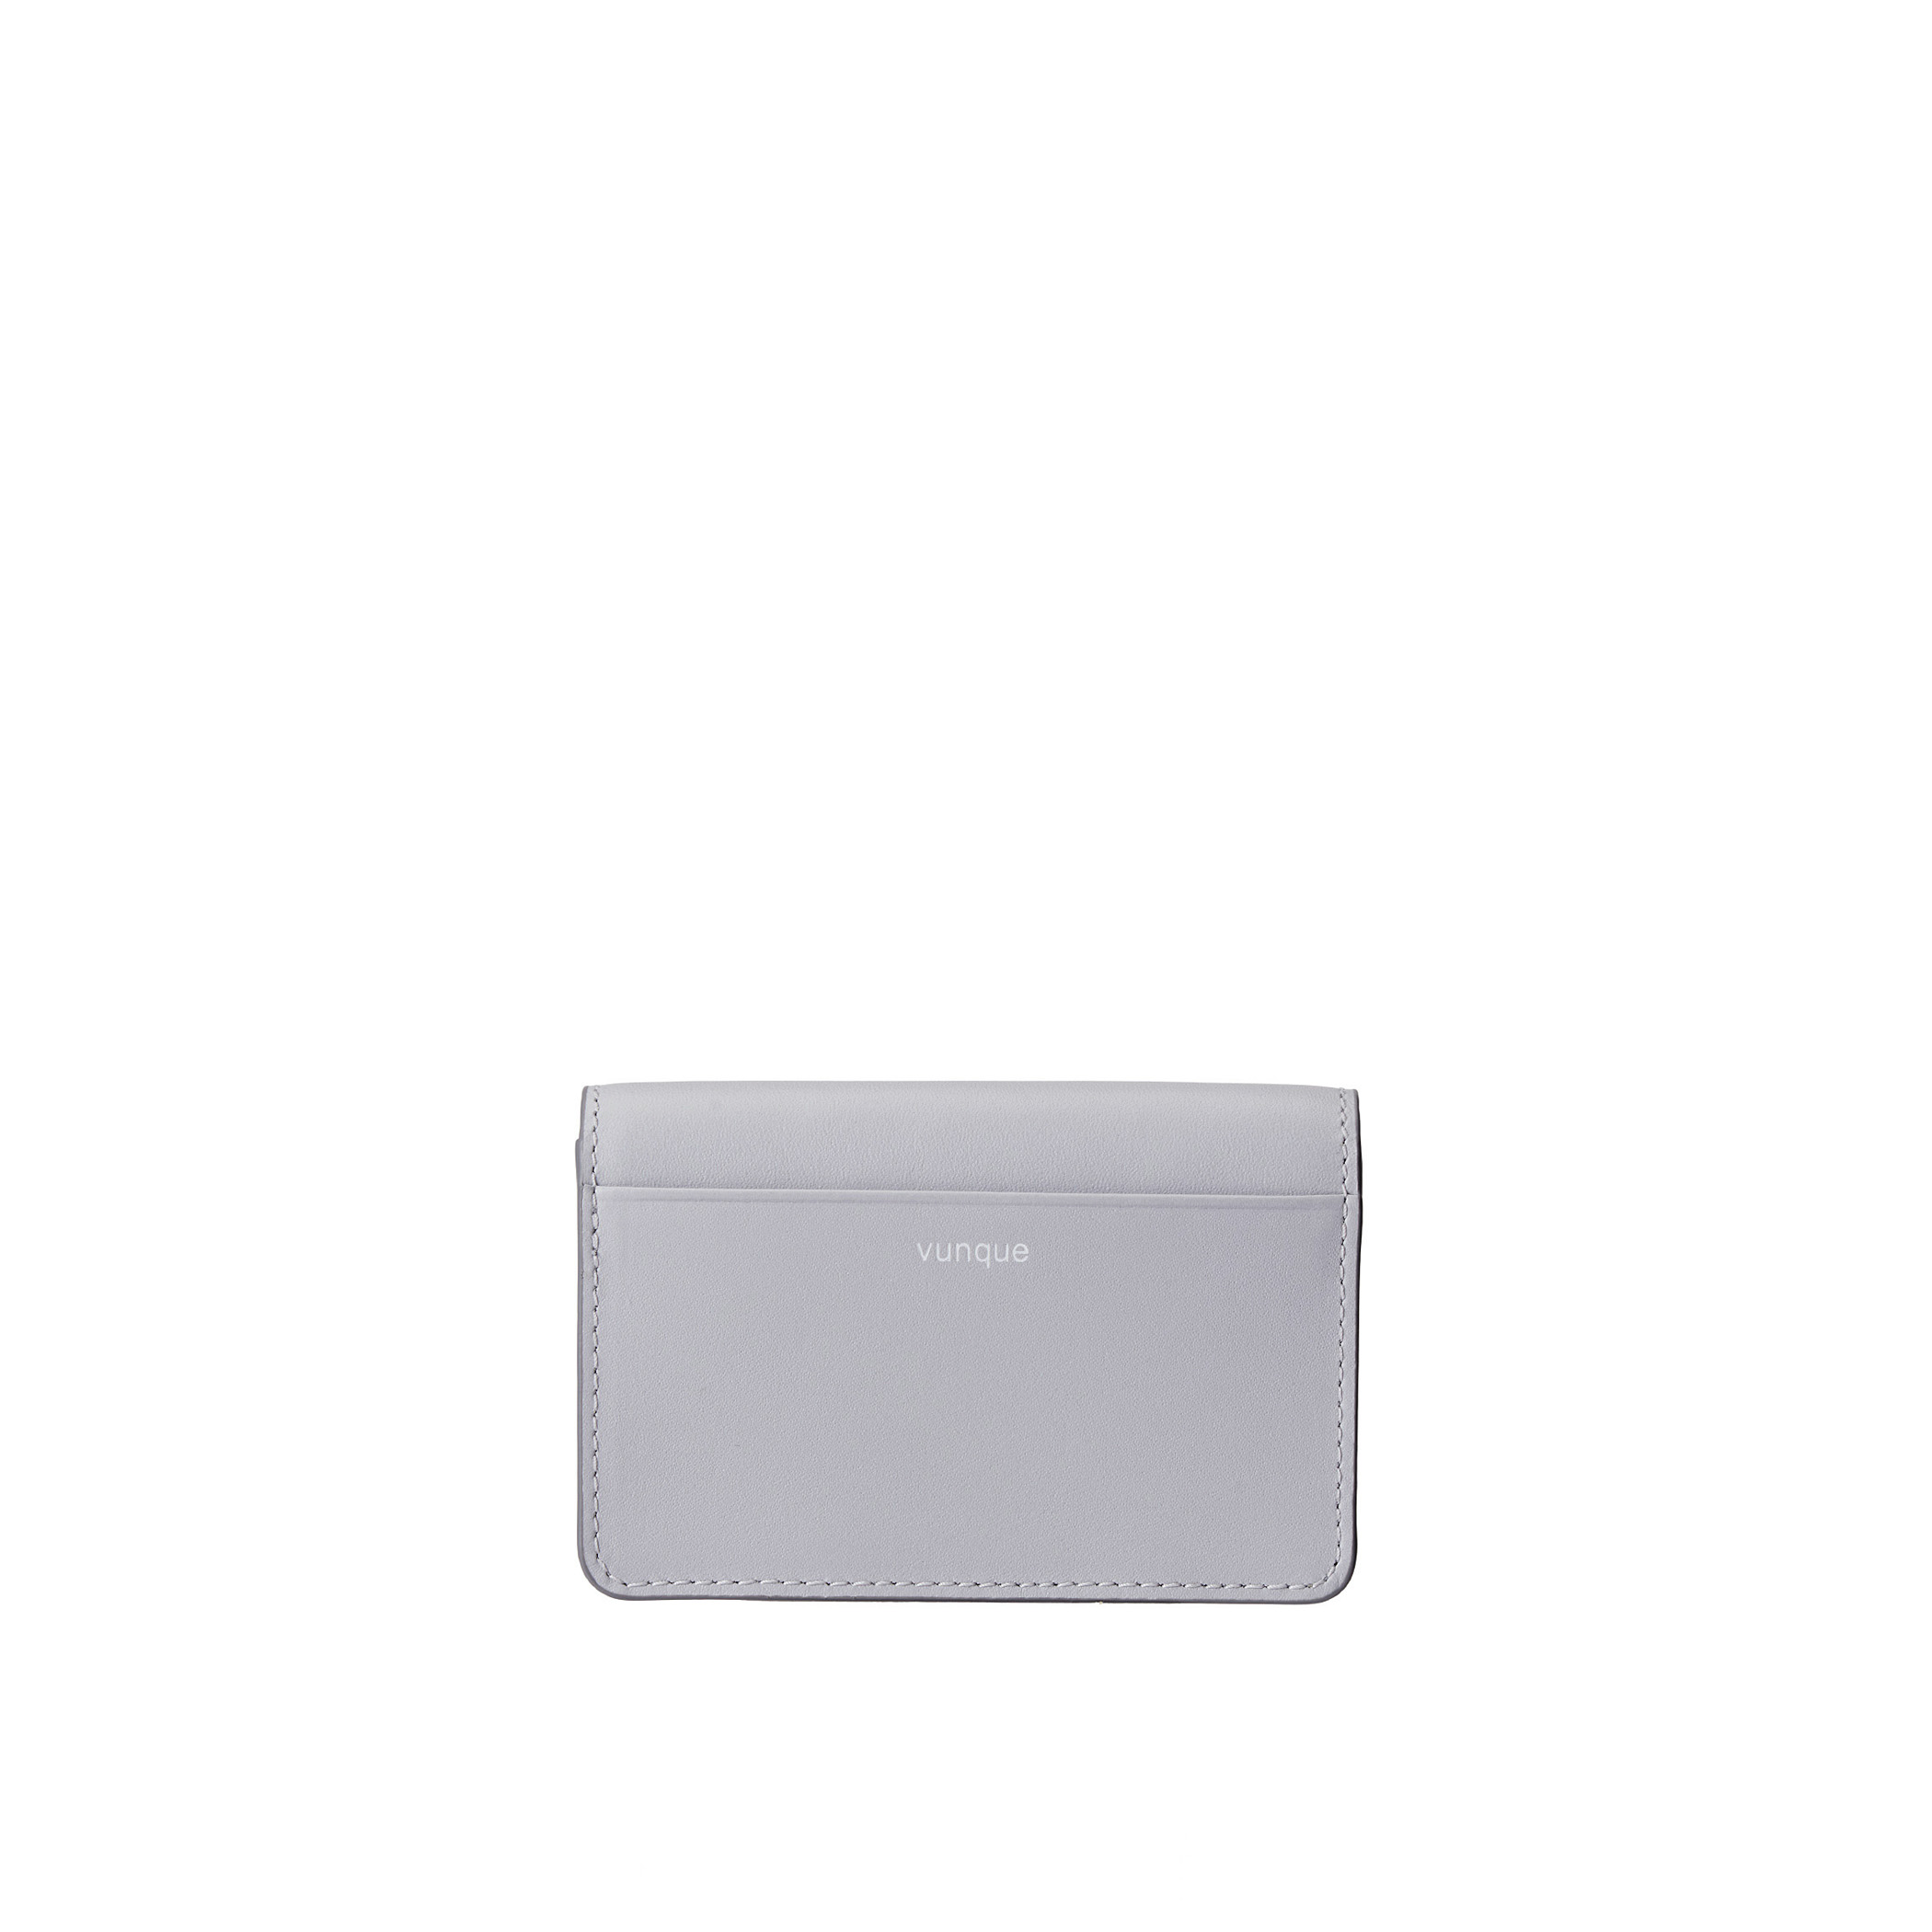 Perfec Essence Card wallet (퍼펙 에센스 카드지갑) Foggy Grey